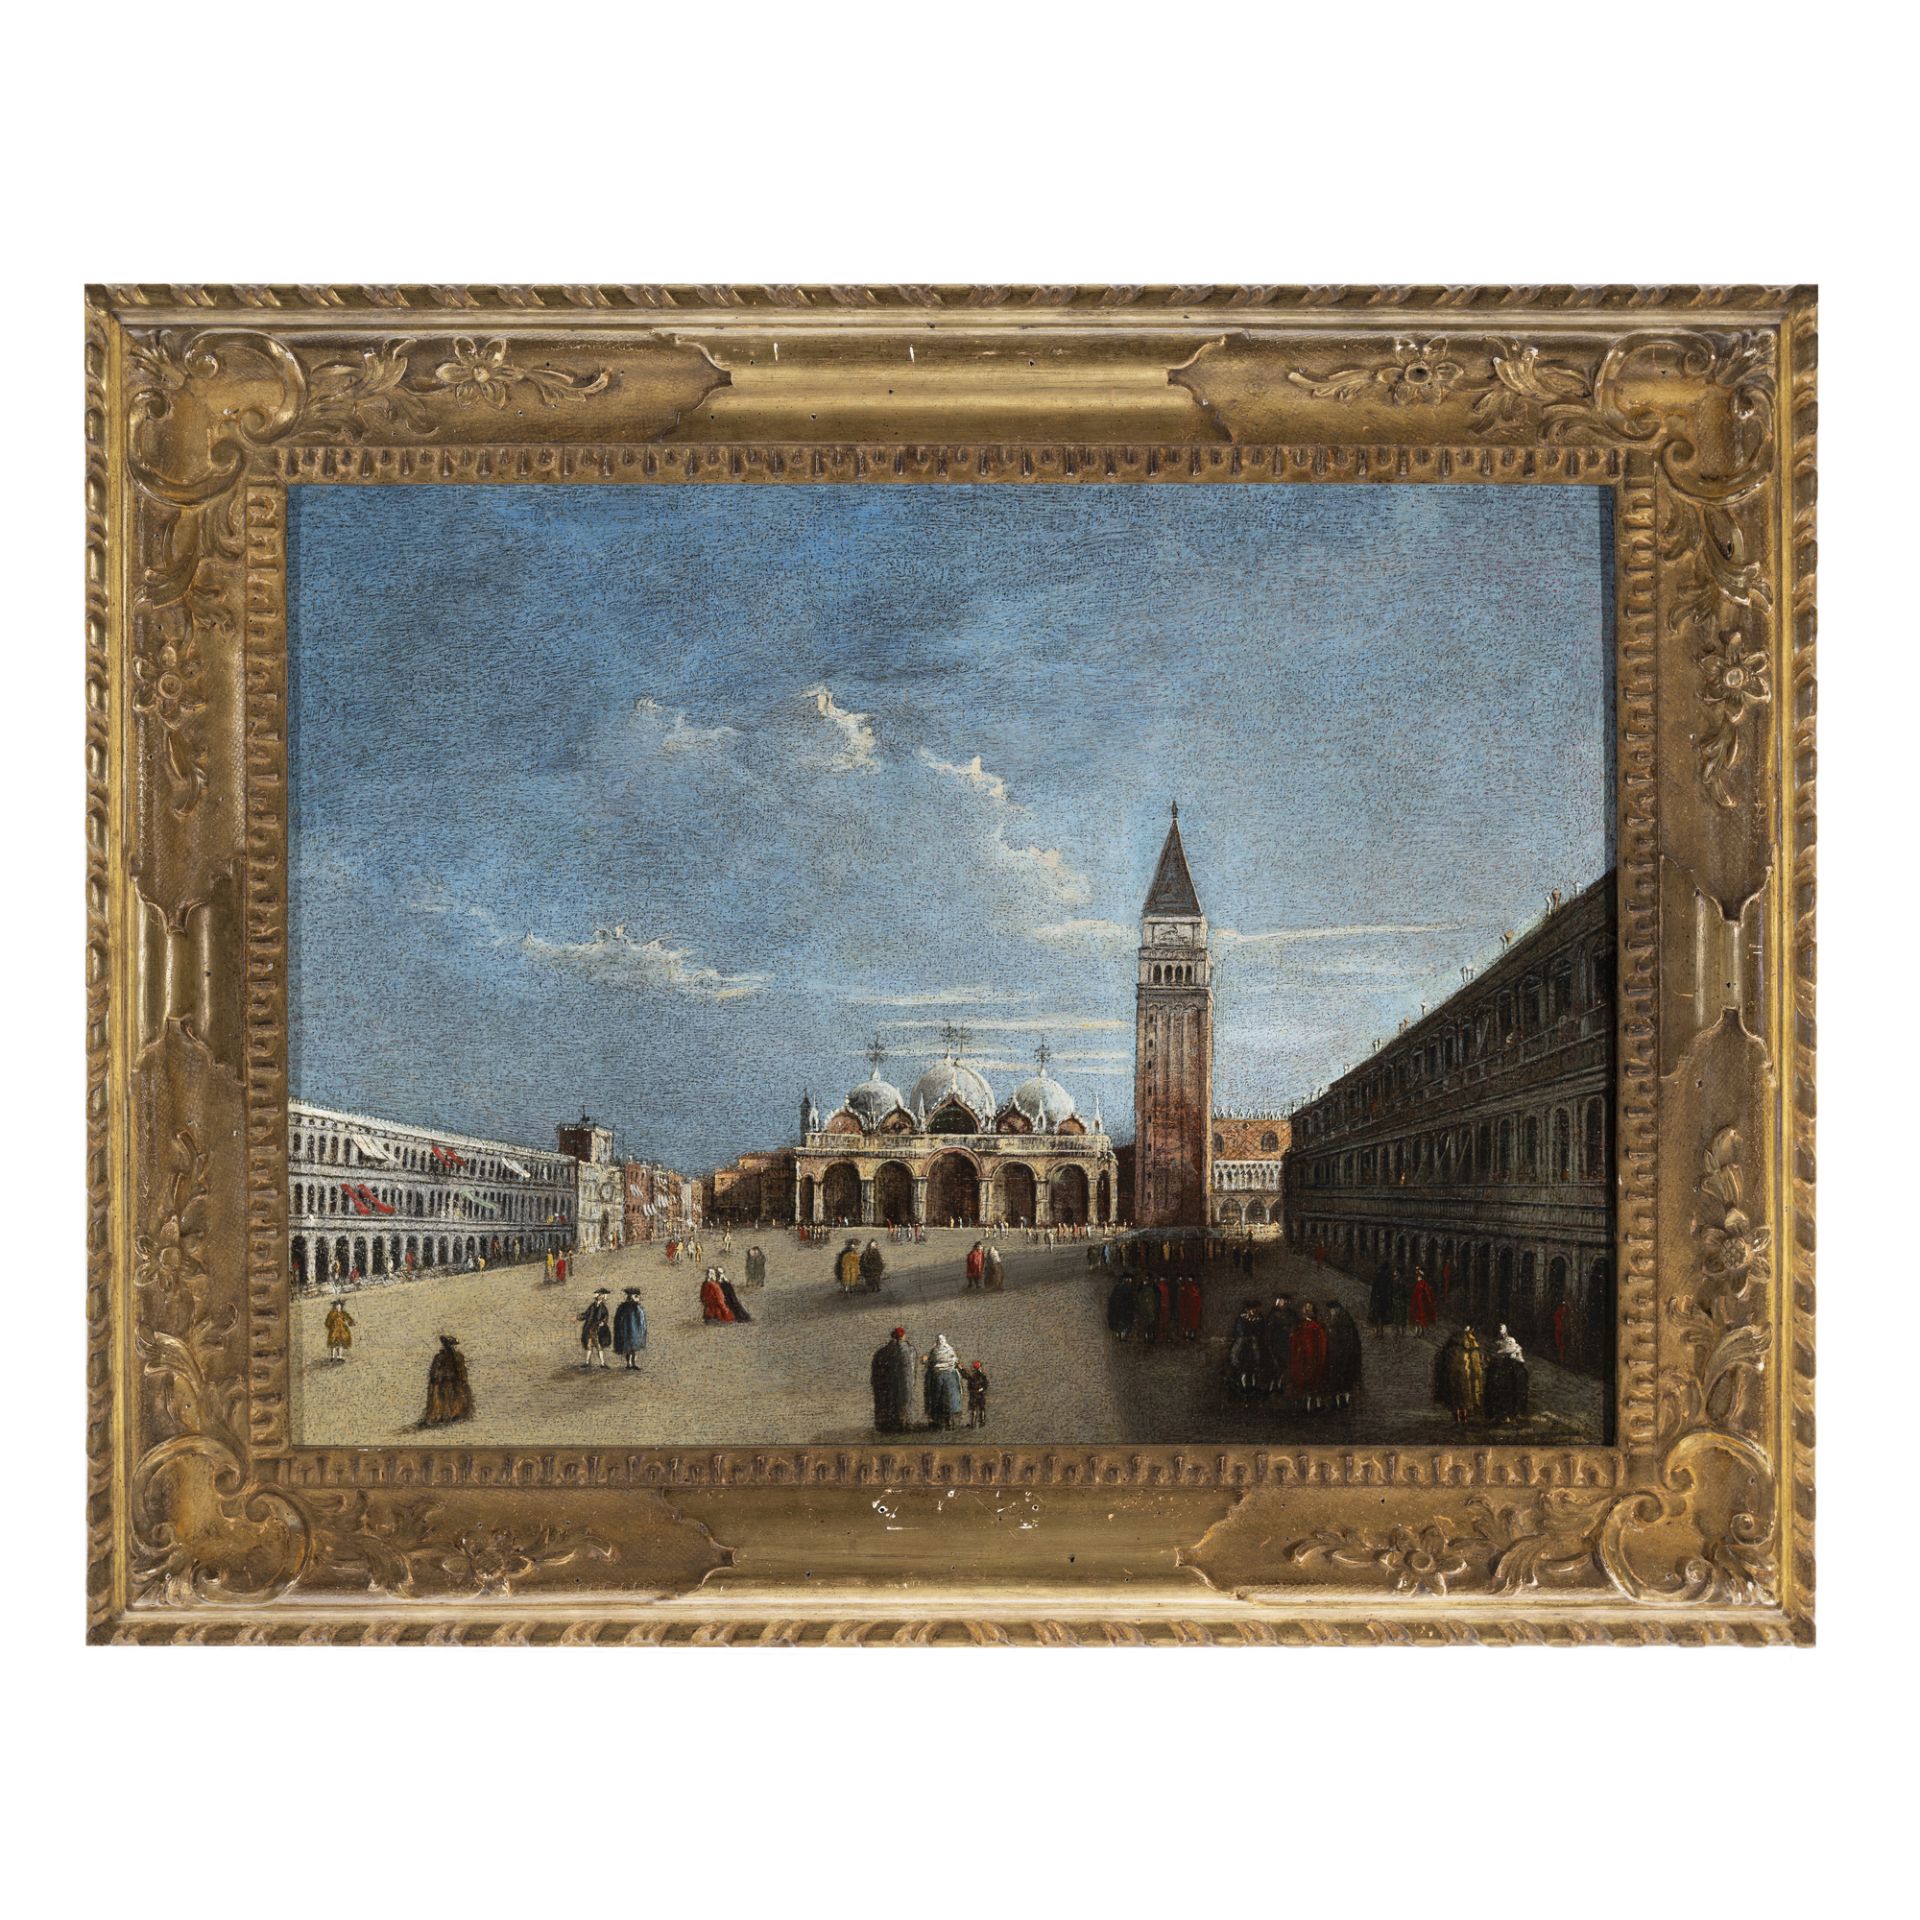 Scuola veneziana del XVIII secolo